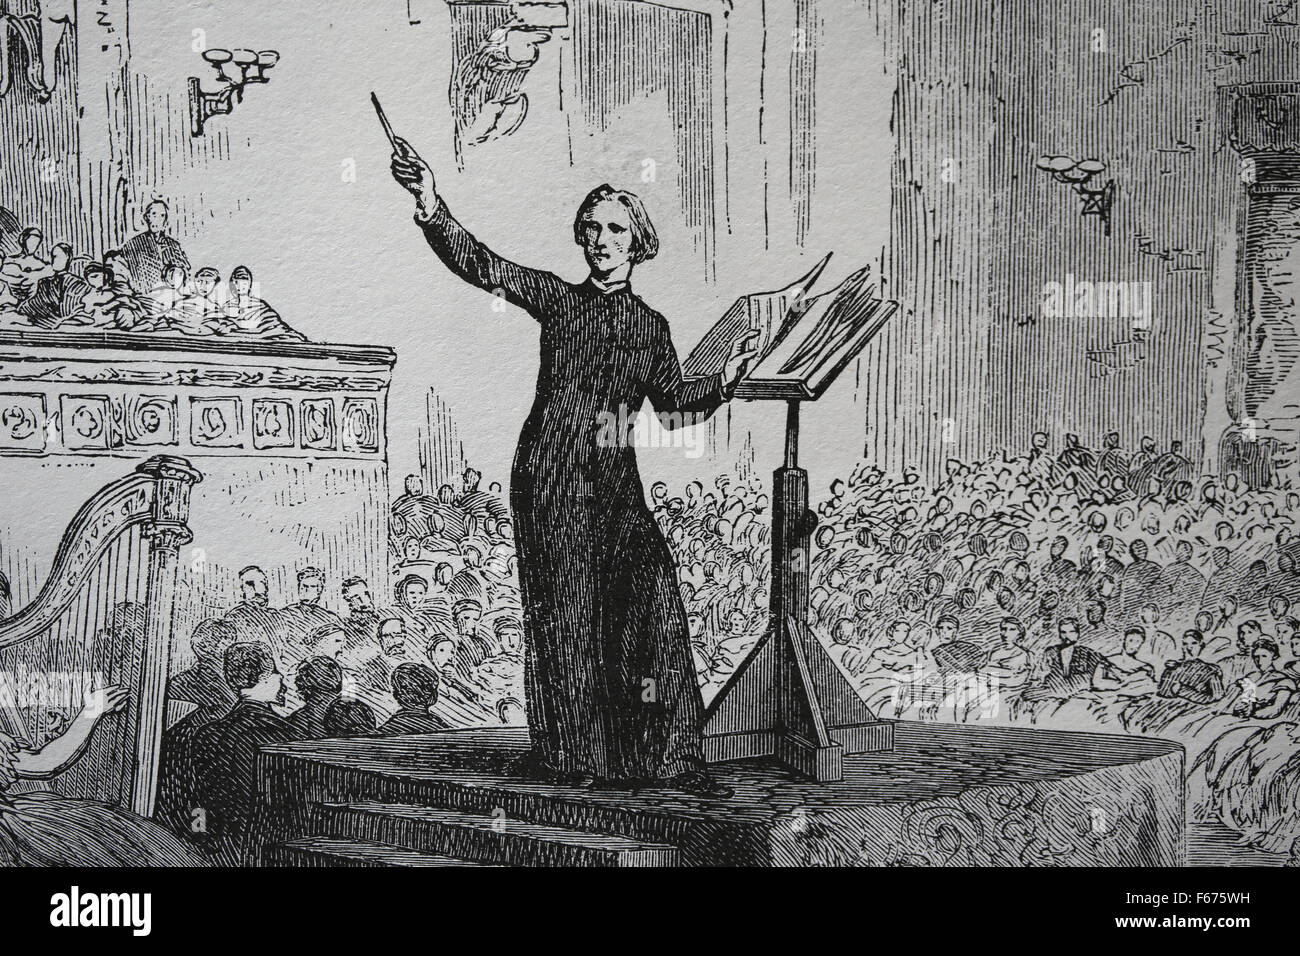 Franz Liszt (1811-1886). Ungarischer Komponist. Liszt, die Durchführung einer seiner St. Elizabeth Oratorien in Pest. Gravur. Stockfoto